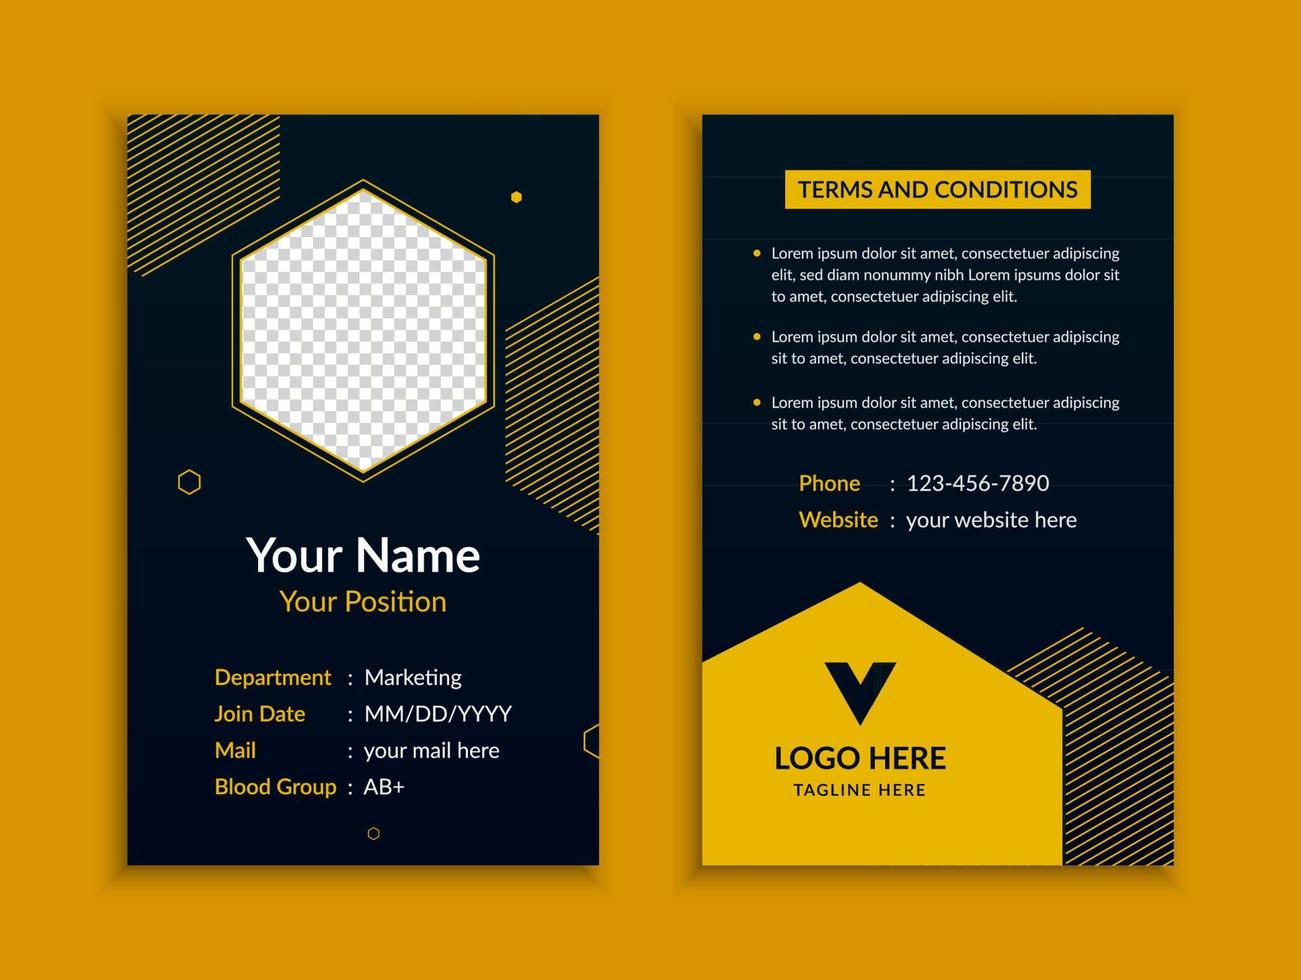 diseño de plantilla de tarjeta de identificación creativa vector